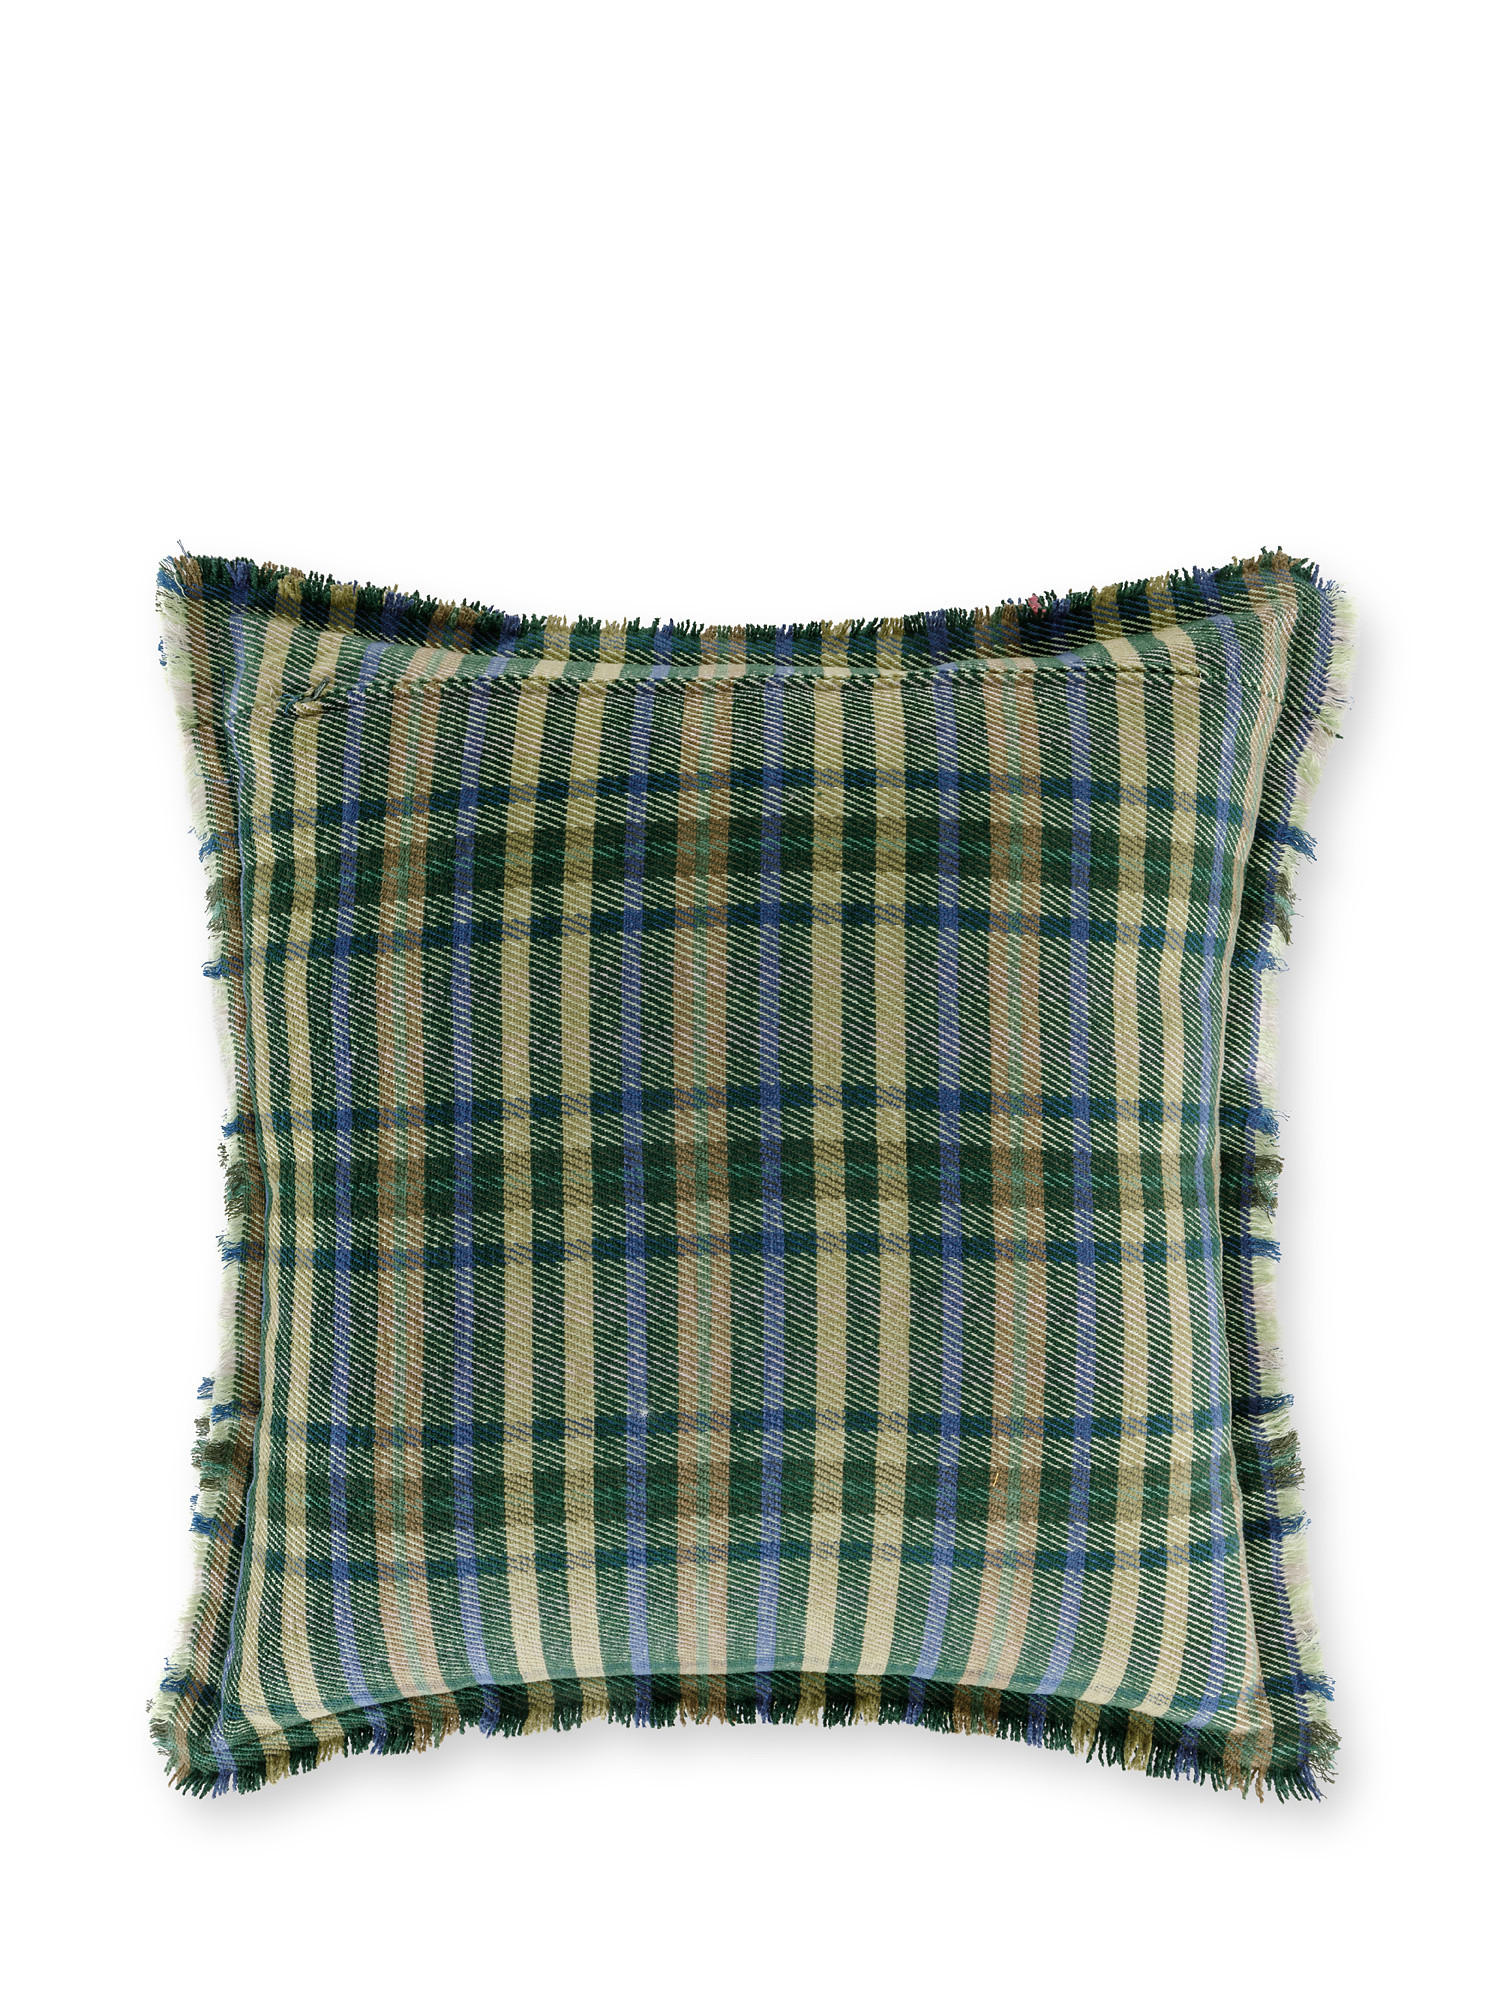 Cuscino ciniglia a quadri 45x45cm, Verde, large image number 1